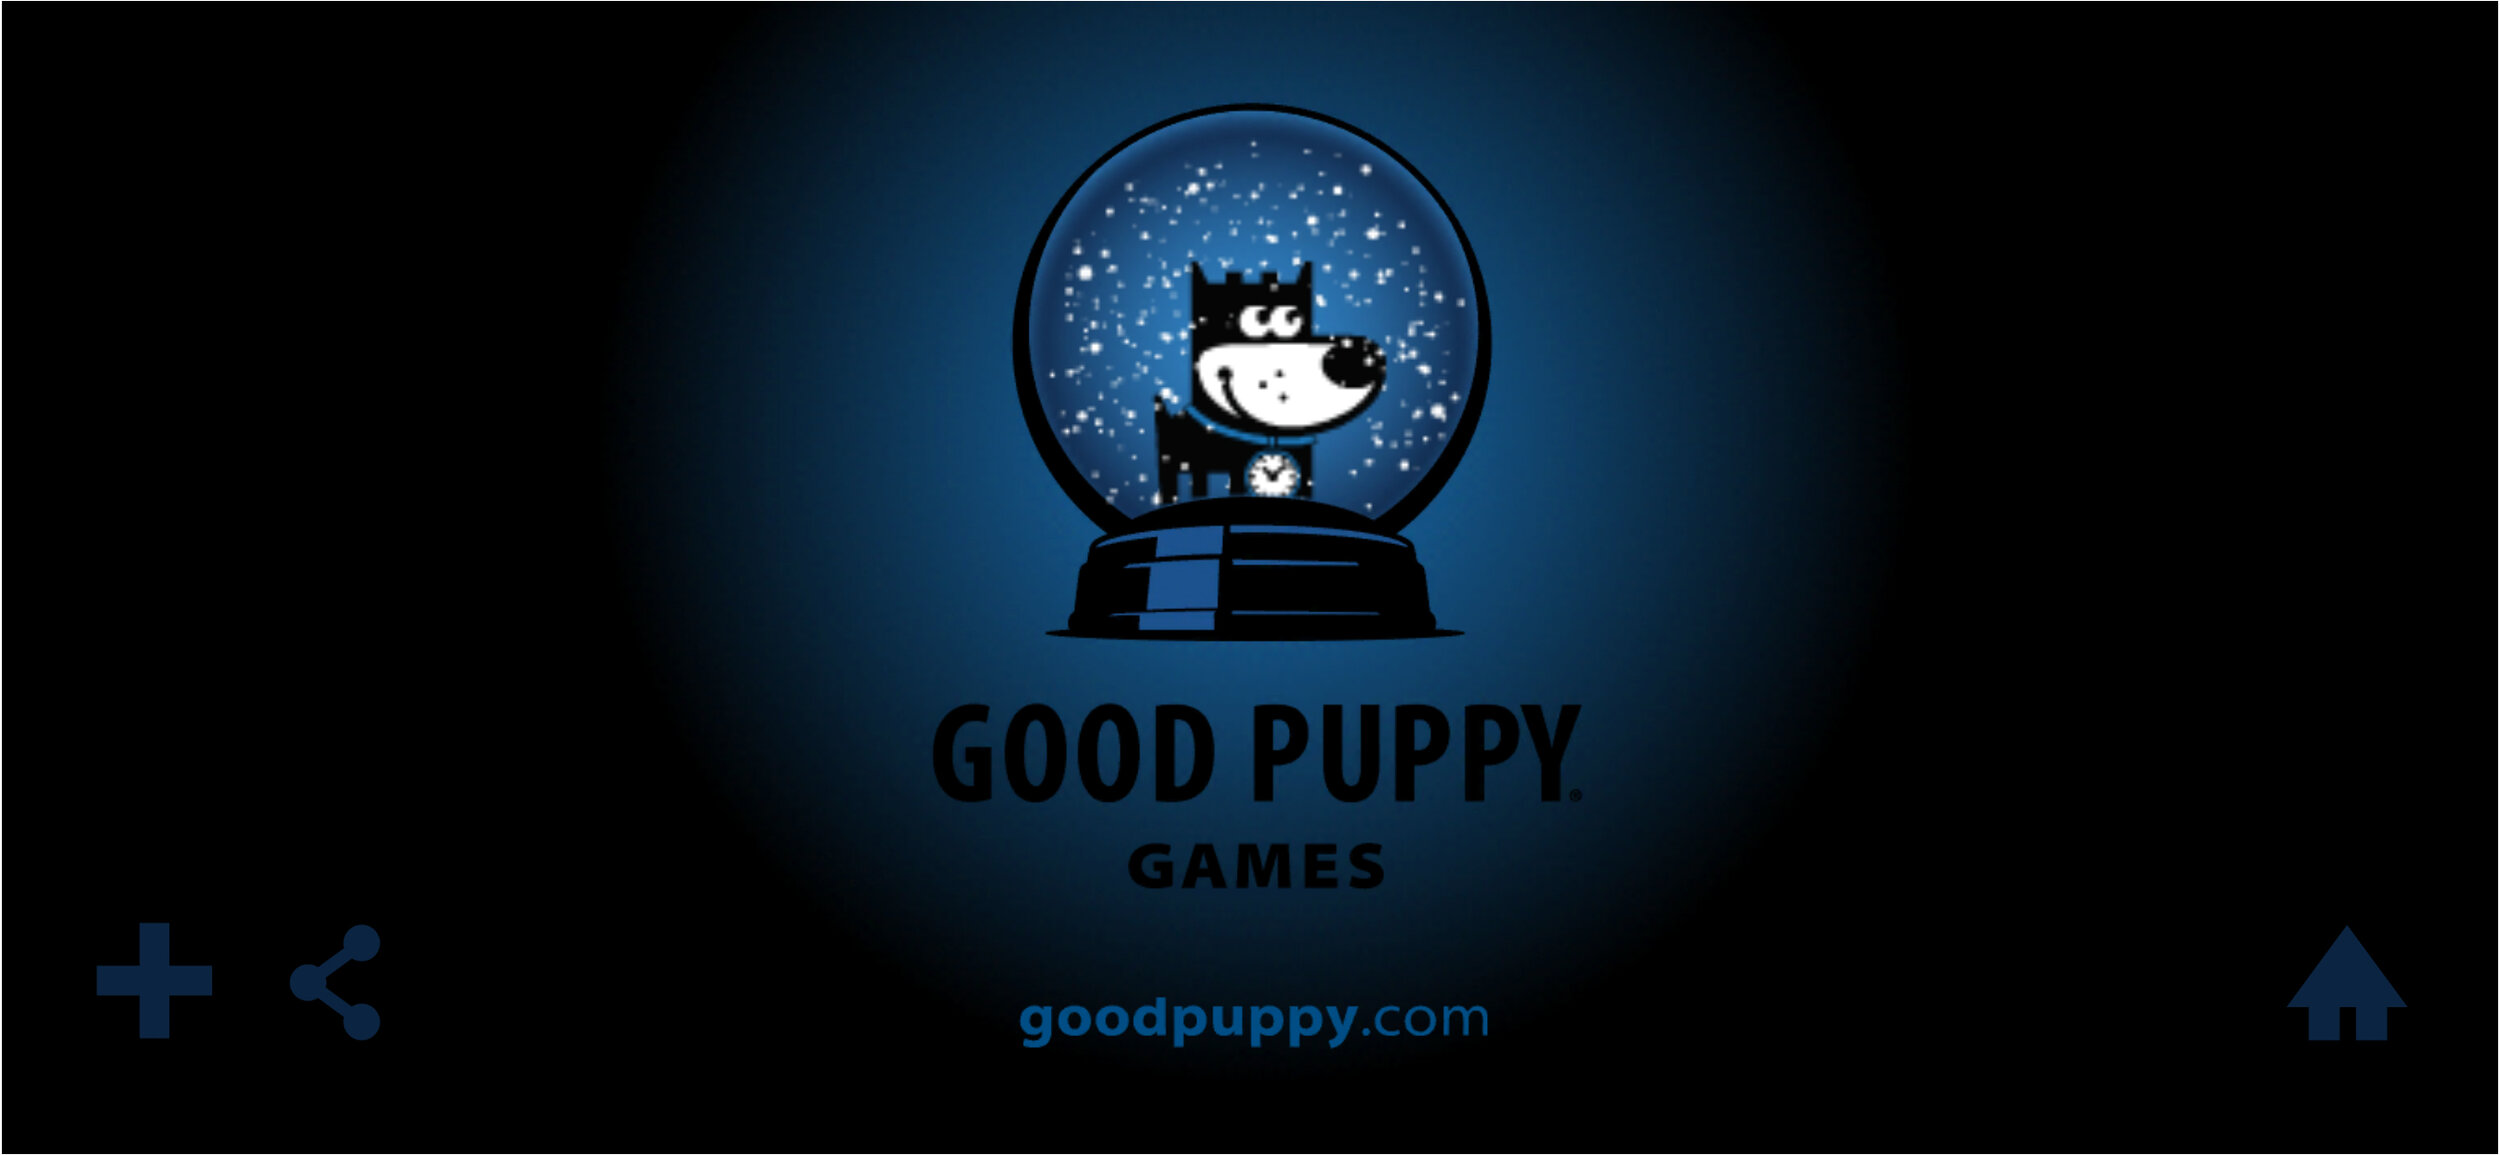 9-GOOD-PUPPY-Apps-Games-Children.jpg